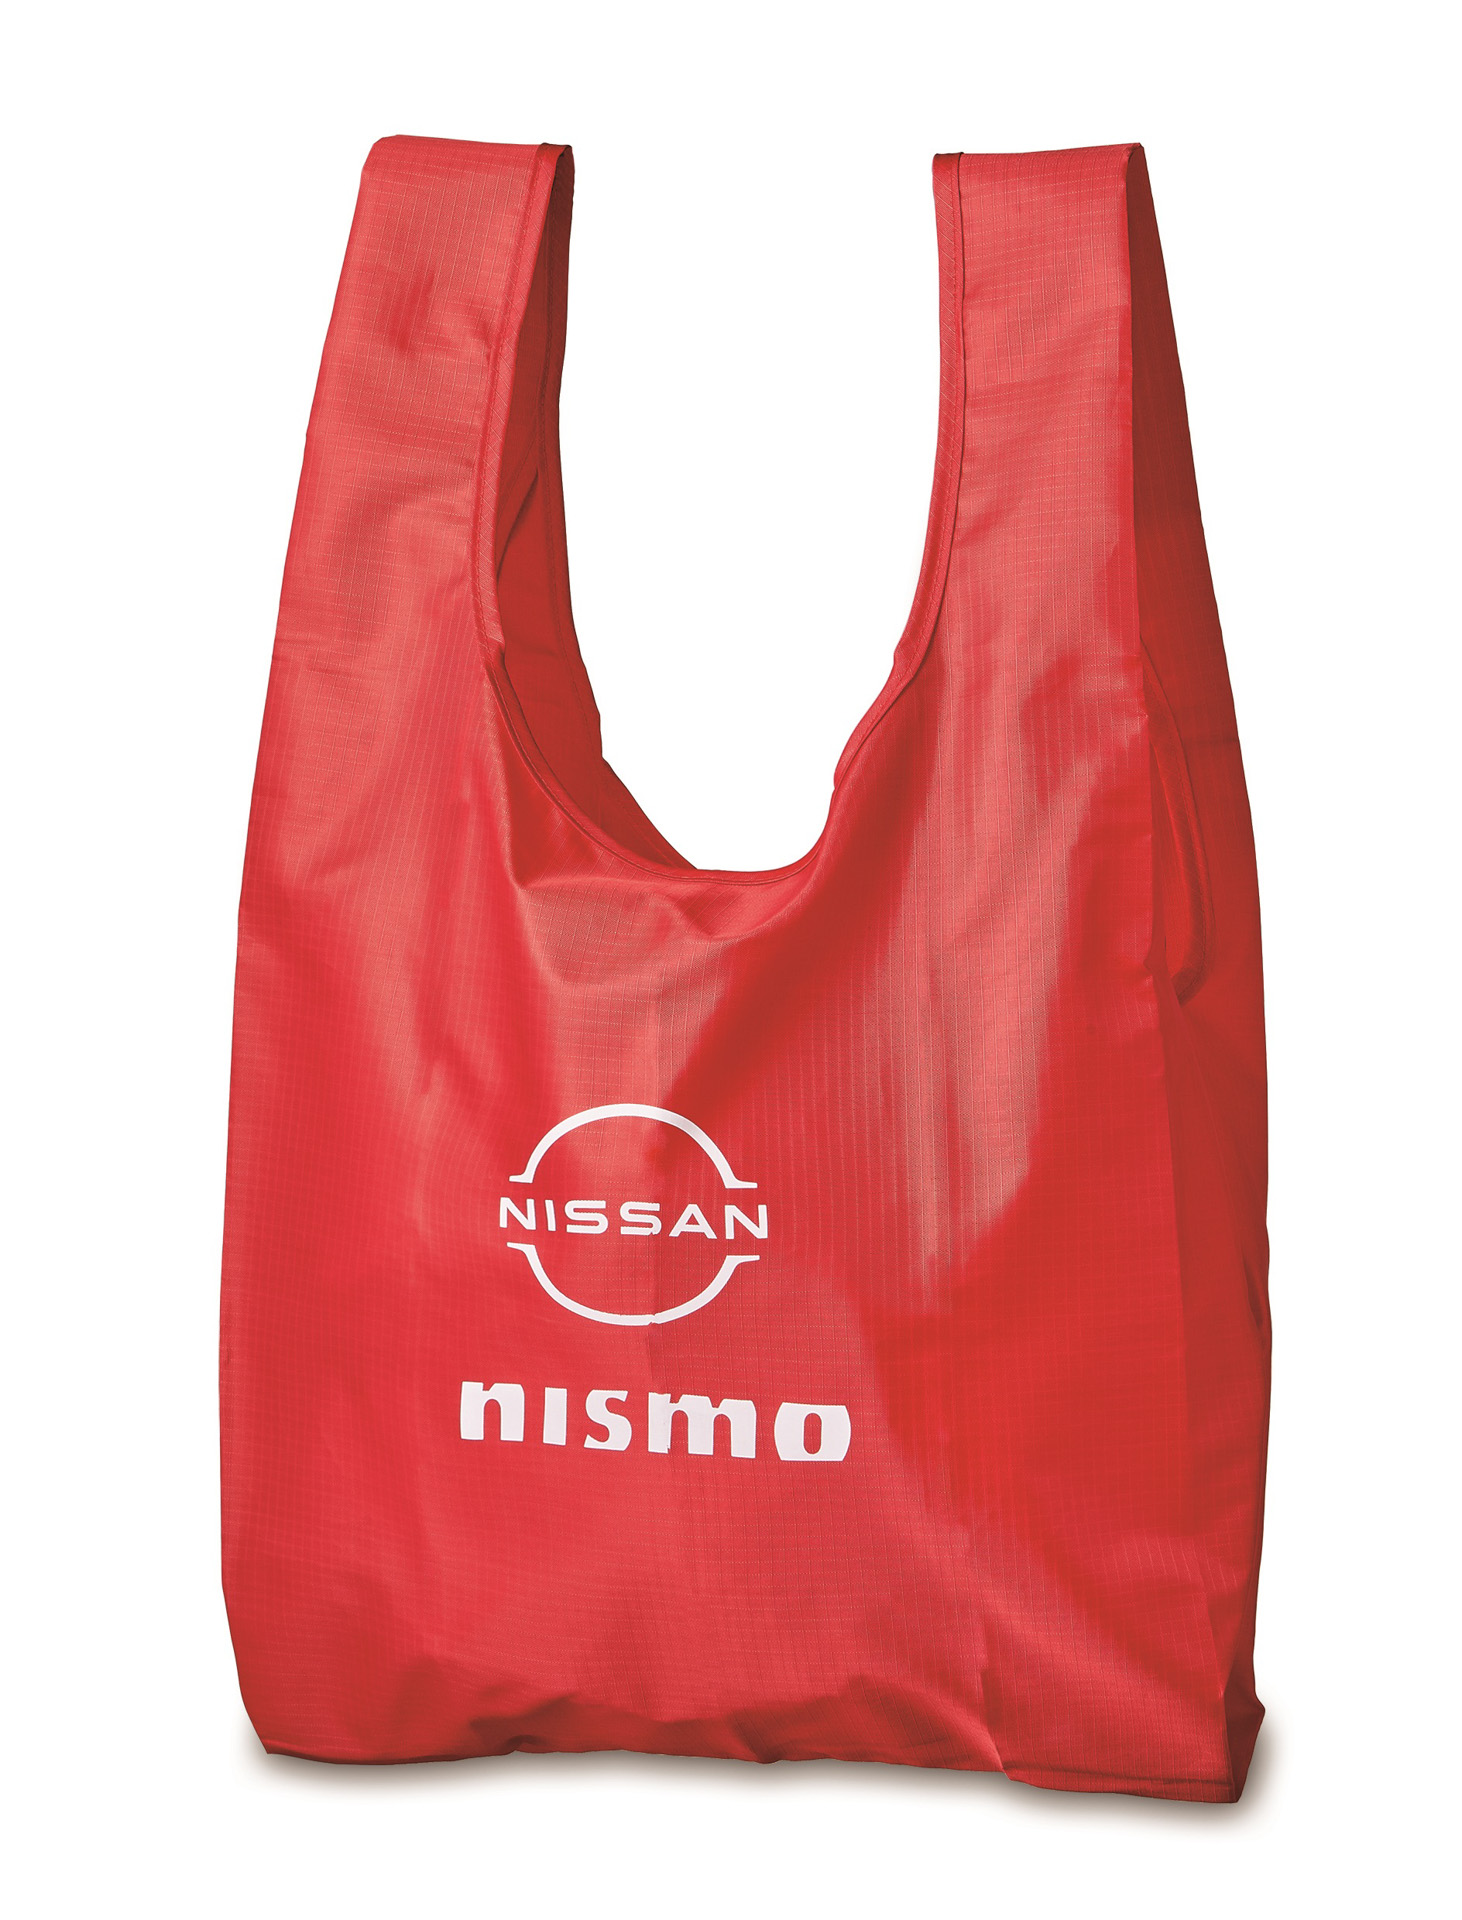 日産、新ロゴ採用のオリジナルグッズ「NISSAN/NISMO collection